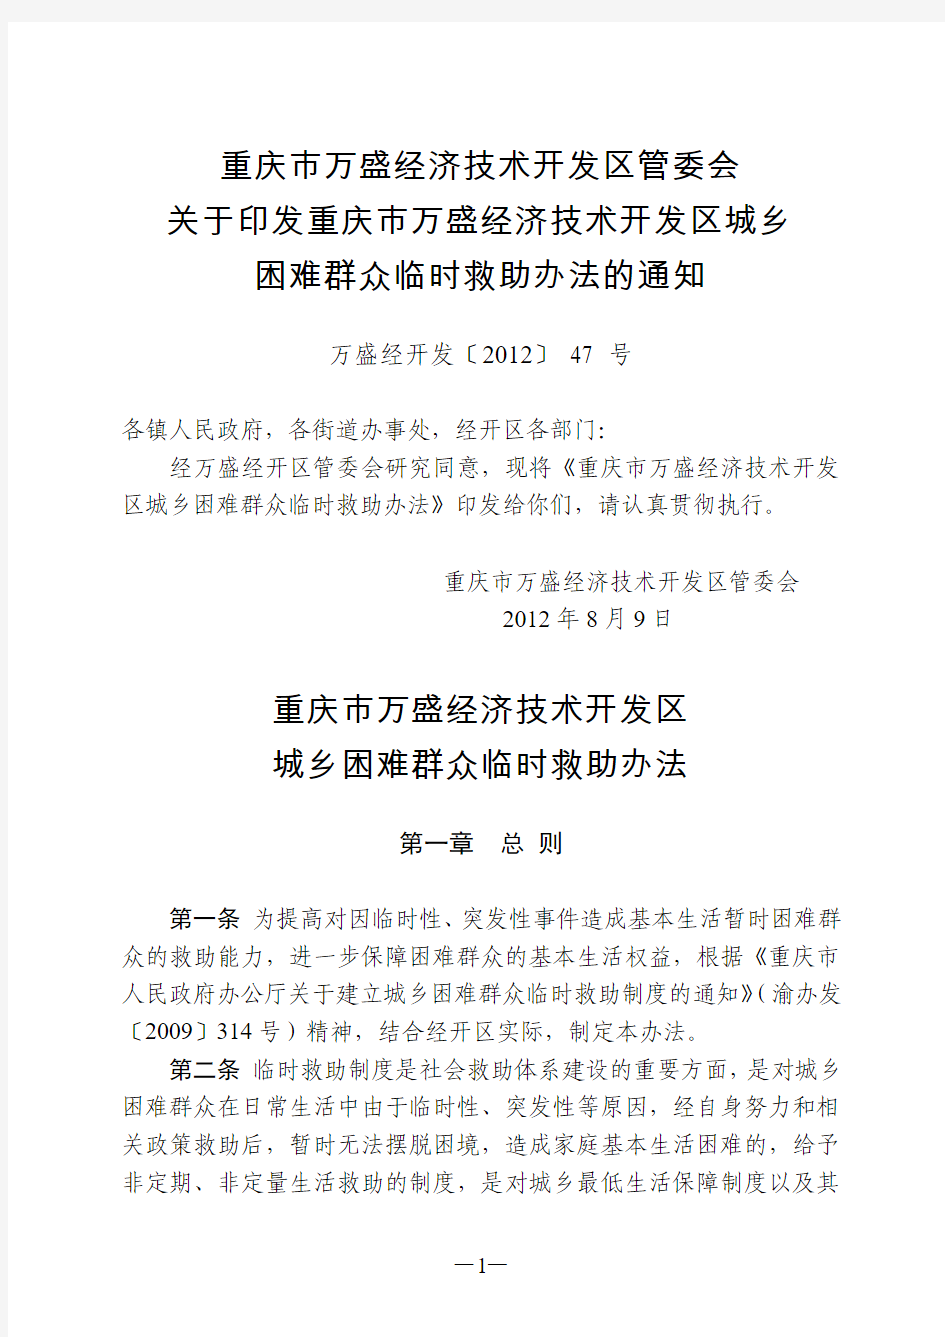 重庆市万盛经济技术开发区城乡困难群众临时救助办法